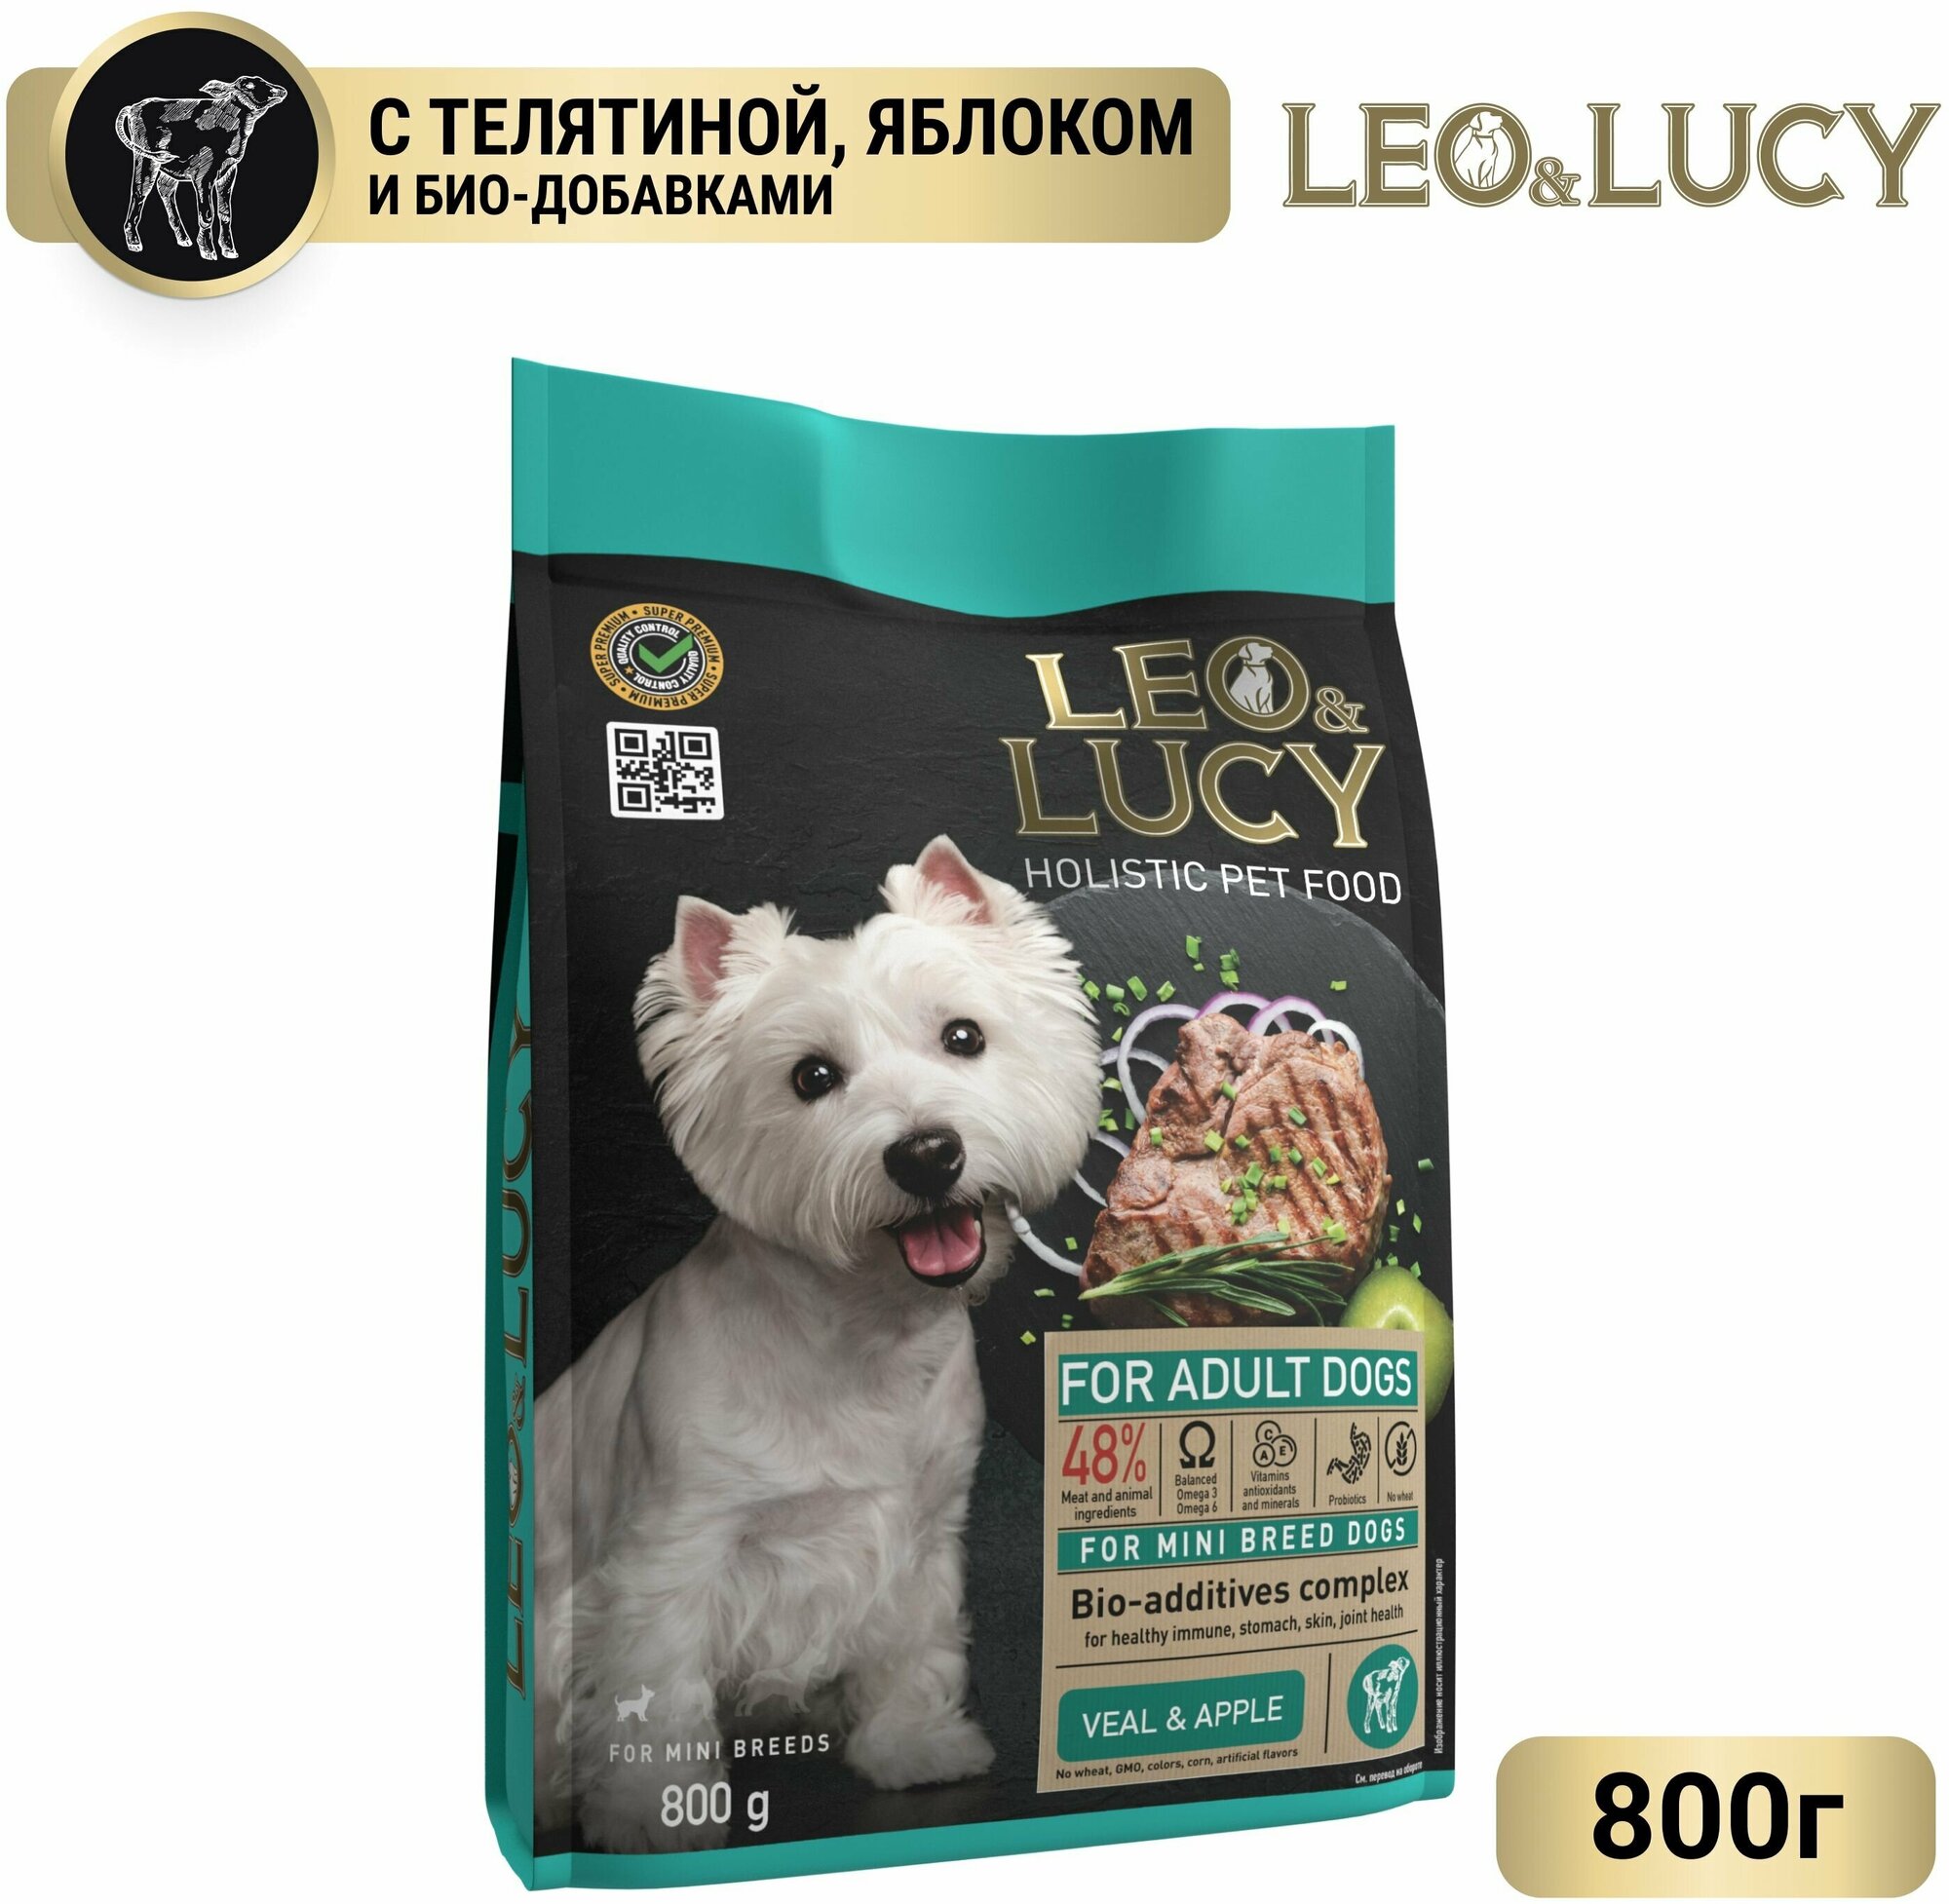 LEO&LUCY сухой холистик корм полнорационный для взрослых собак мини пород с телятиной, яблоком и биодобавками, 800 г